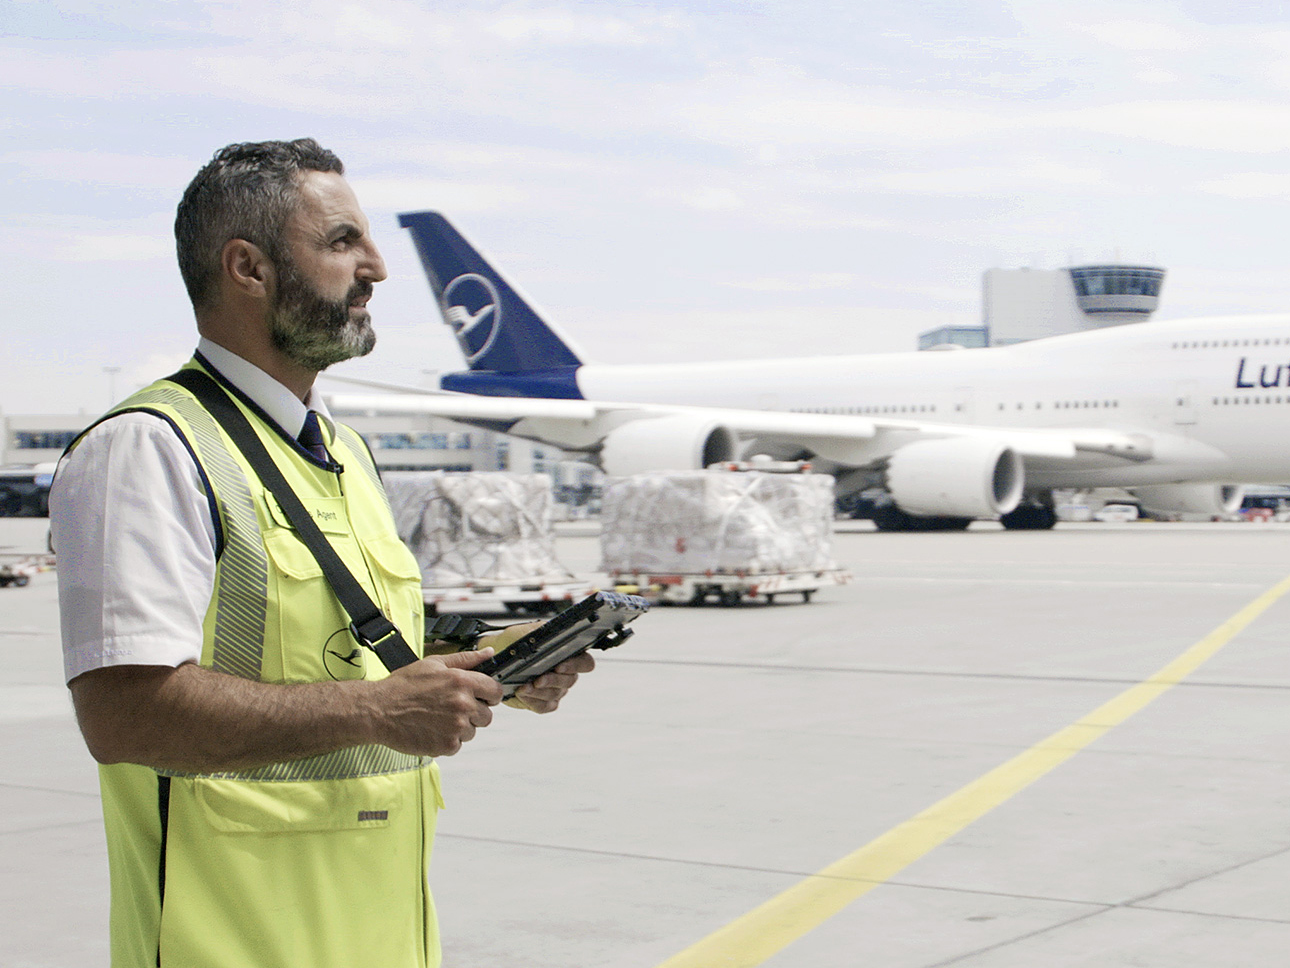 A Lufthansa employee stands on an airfield